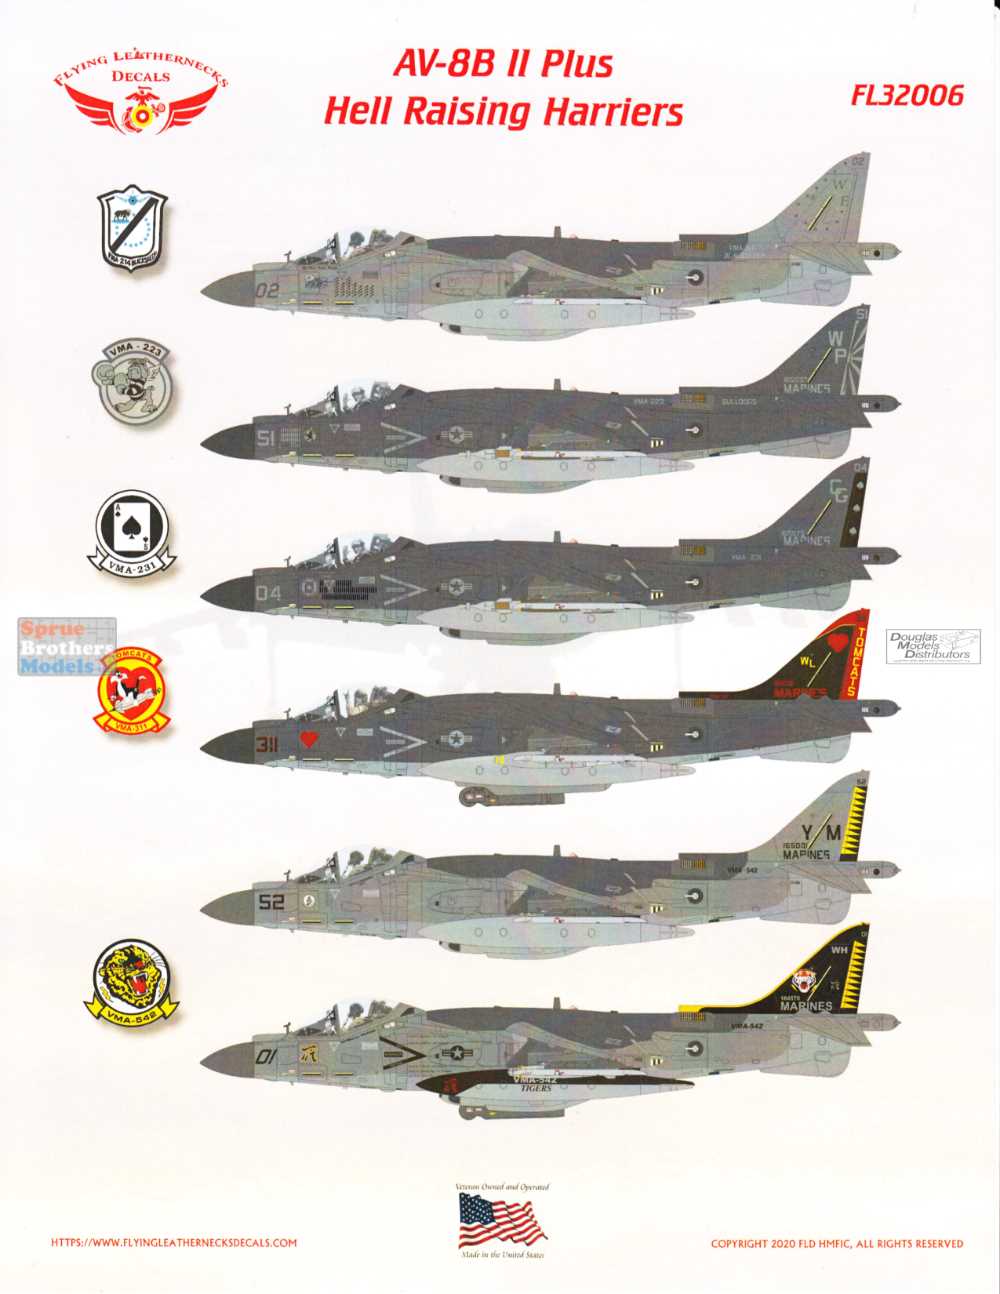 Flying Leathernecks Decals FL32006 AV-8B Harrier II Plus for 1/32 Trumpeter 